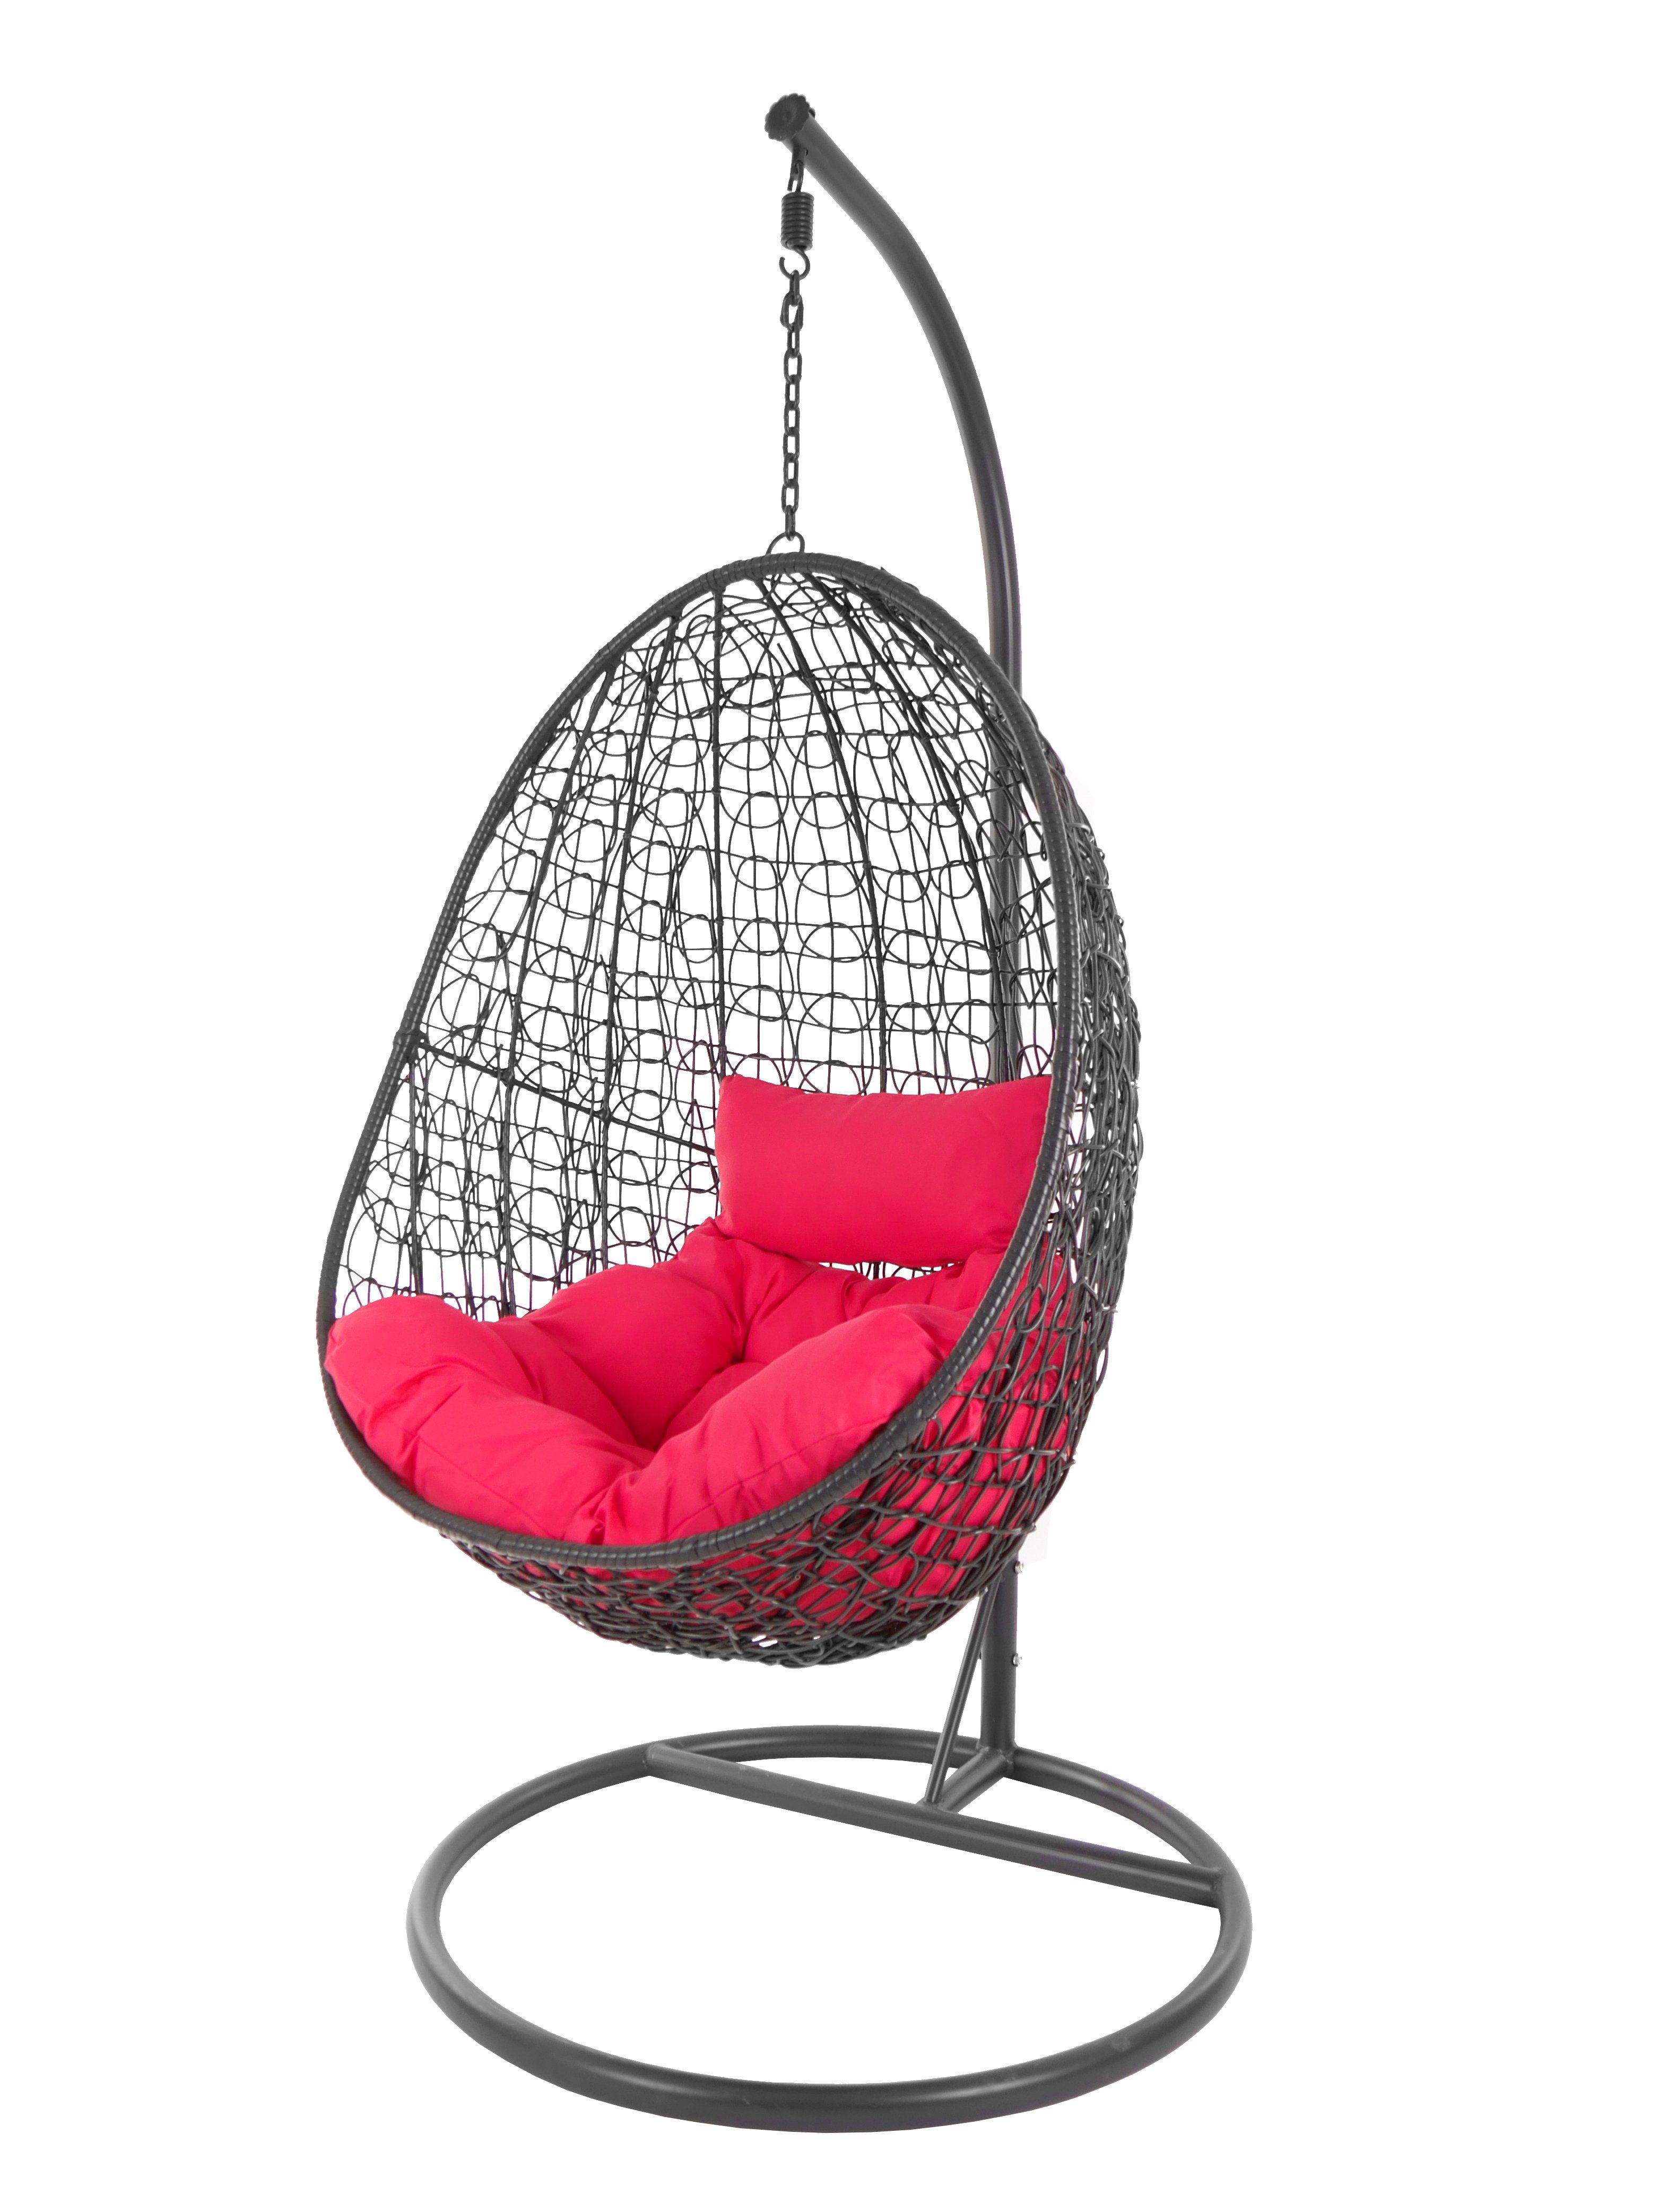 KIDEO Hängesessel Hängesessel Capdepera anthrazit, moderner Swing Chair, Schwebesessel mit Gestell und Kissen, Loungemöbel pink (3333 hot pink)